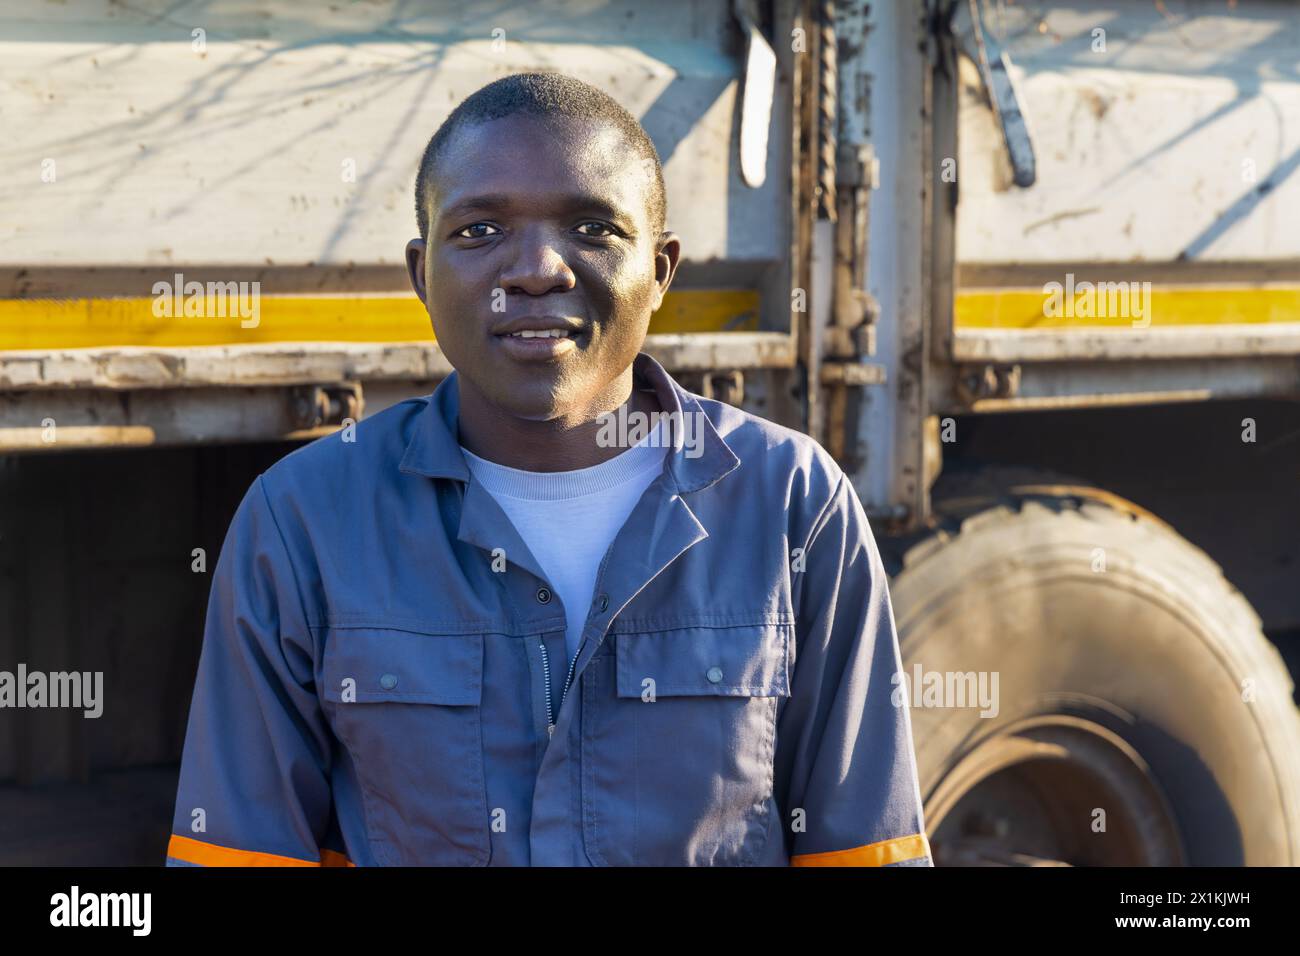 giovane autista africano in abbigliamento da lavoro, accanto al camion Foto Stock